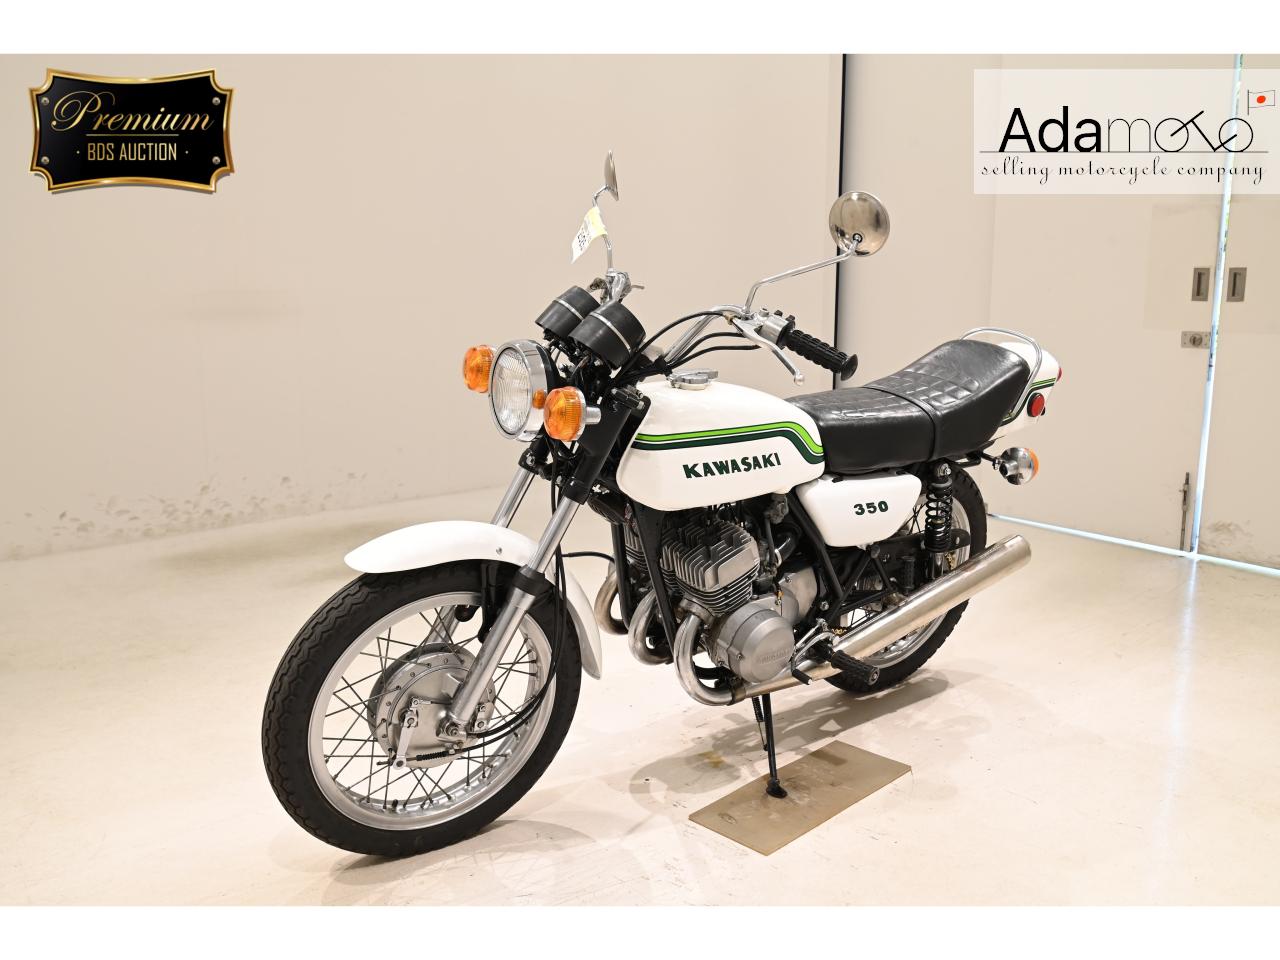 Kawasaki 350SS - Adamoto - Motorcycles from Japan